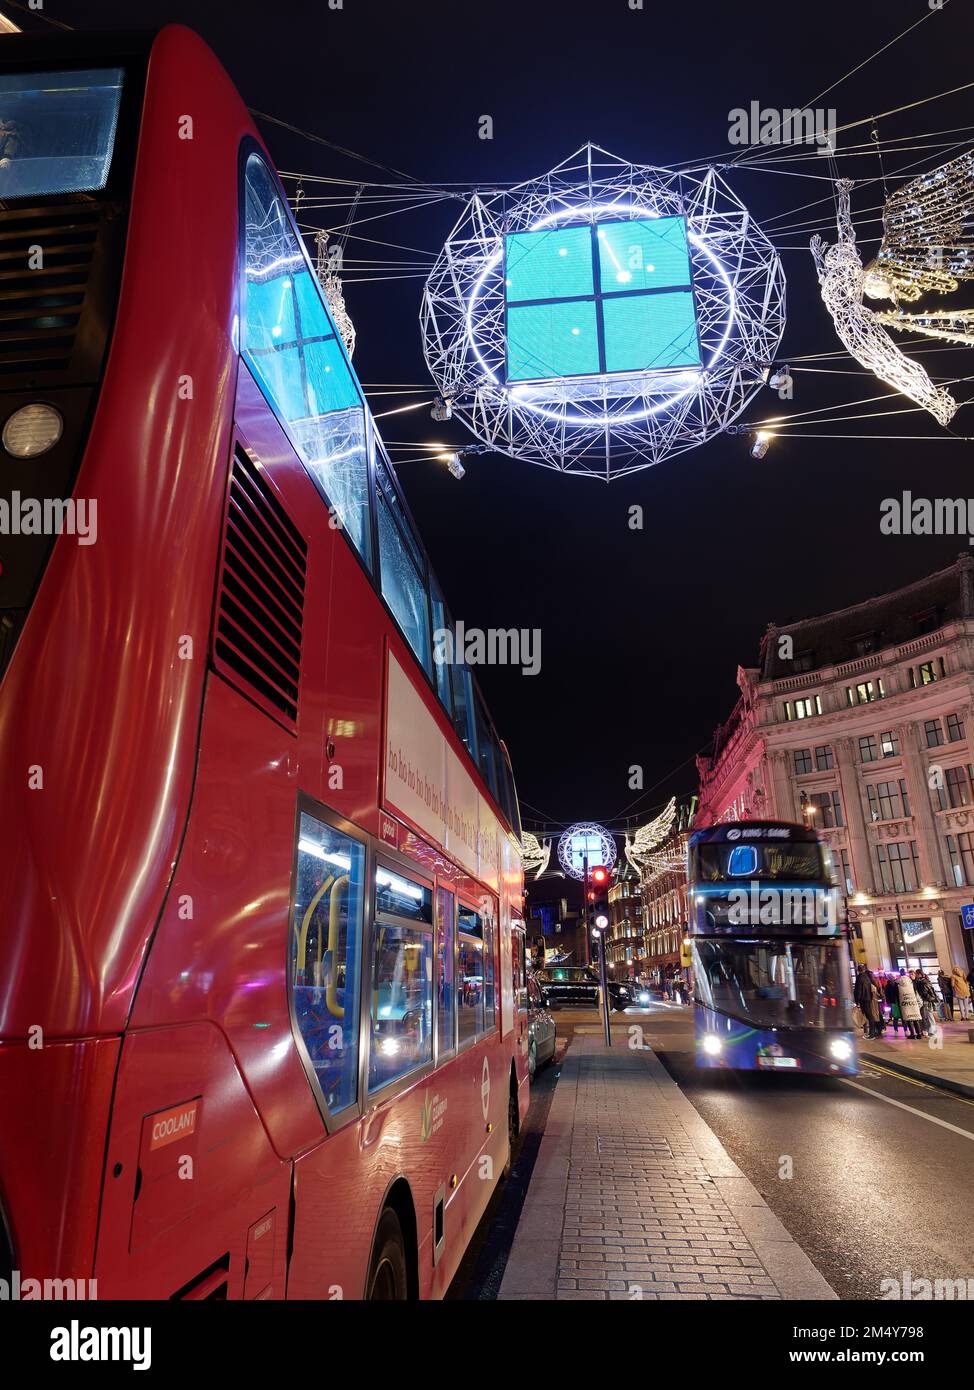 Bus et spiritueux de Noël à Londres, alias Angels suspendus au-dessus de Regent Street dans le cadre de l'exposition des lumières de Noël. Londres Banque D'Images